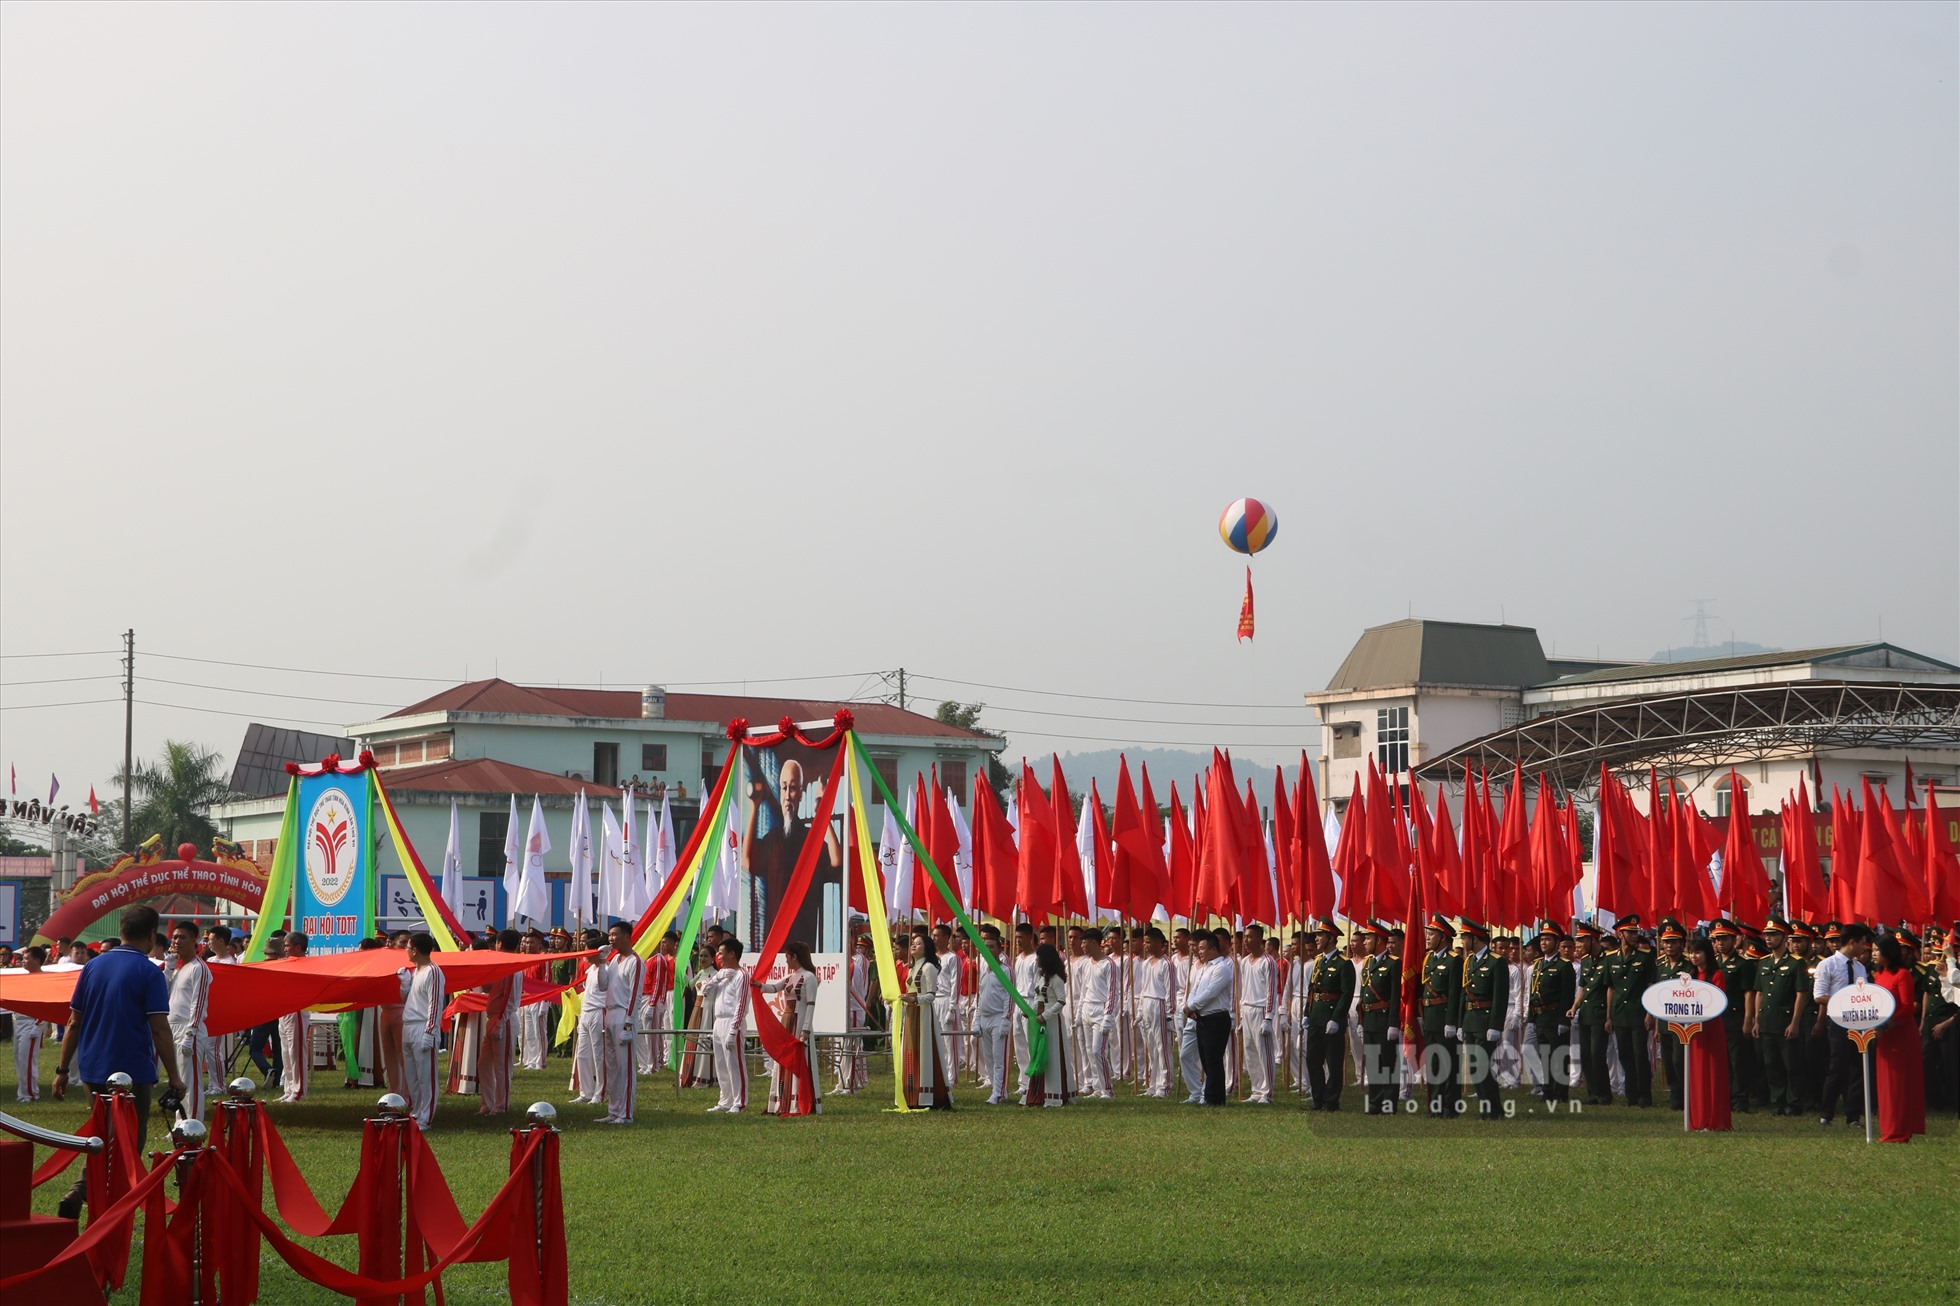 Lễ khai mạc Đại hội Thể dục thể thao tỉnh Hòa Bình lần thứ VII có sự tham gia của hơn 5.000 người.